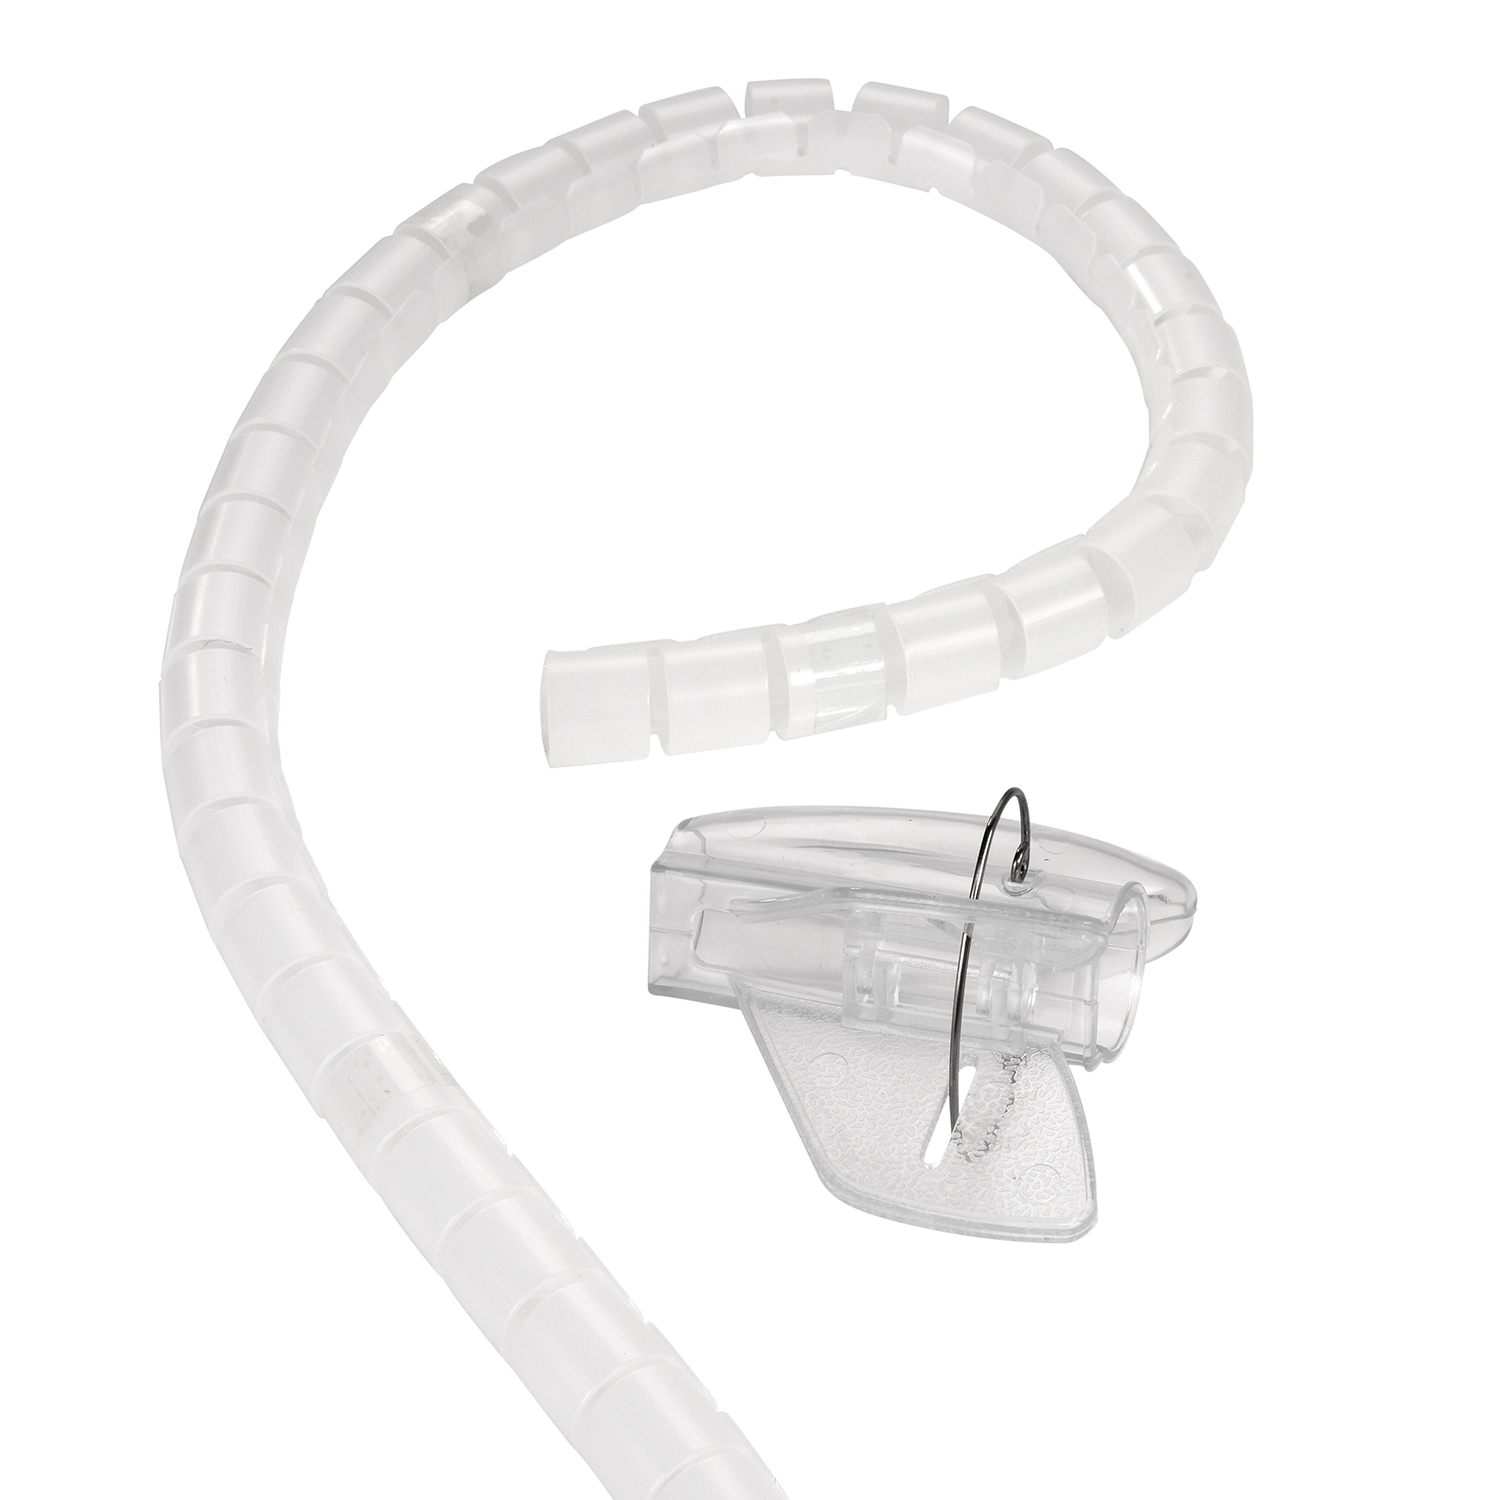 Spiral-Kabelschlauch mit Einfädelhilfe, Transparent, 2m TPFNET Transparent 20mm, Kabelschlauch, Premium